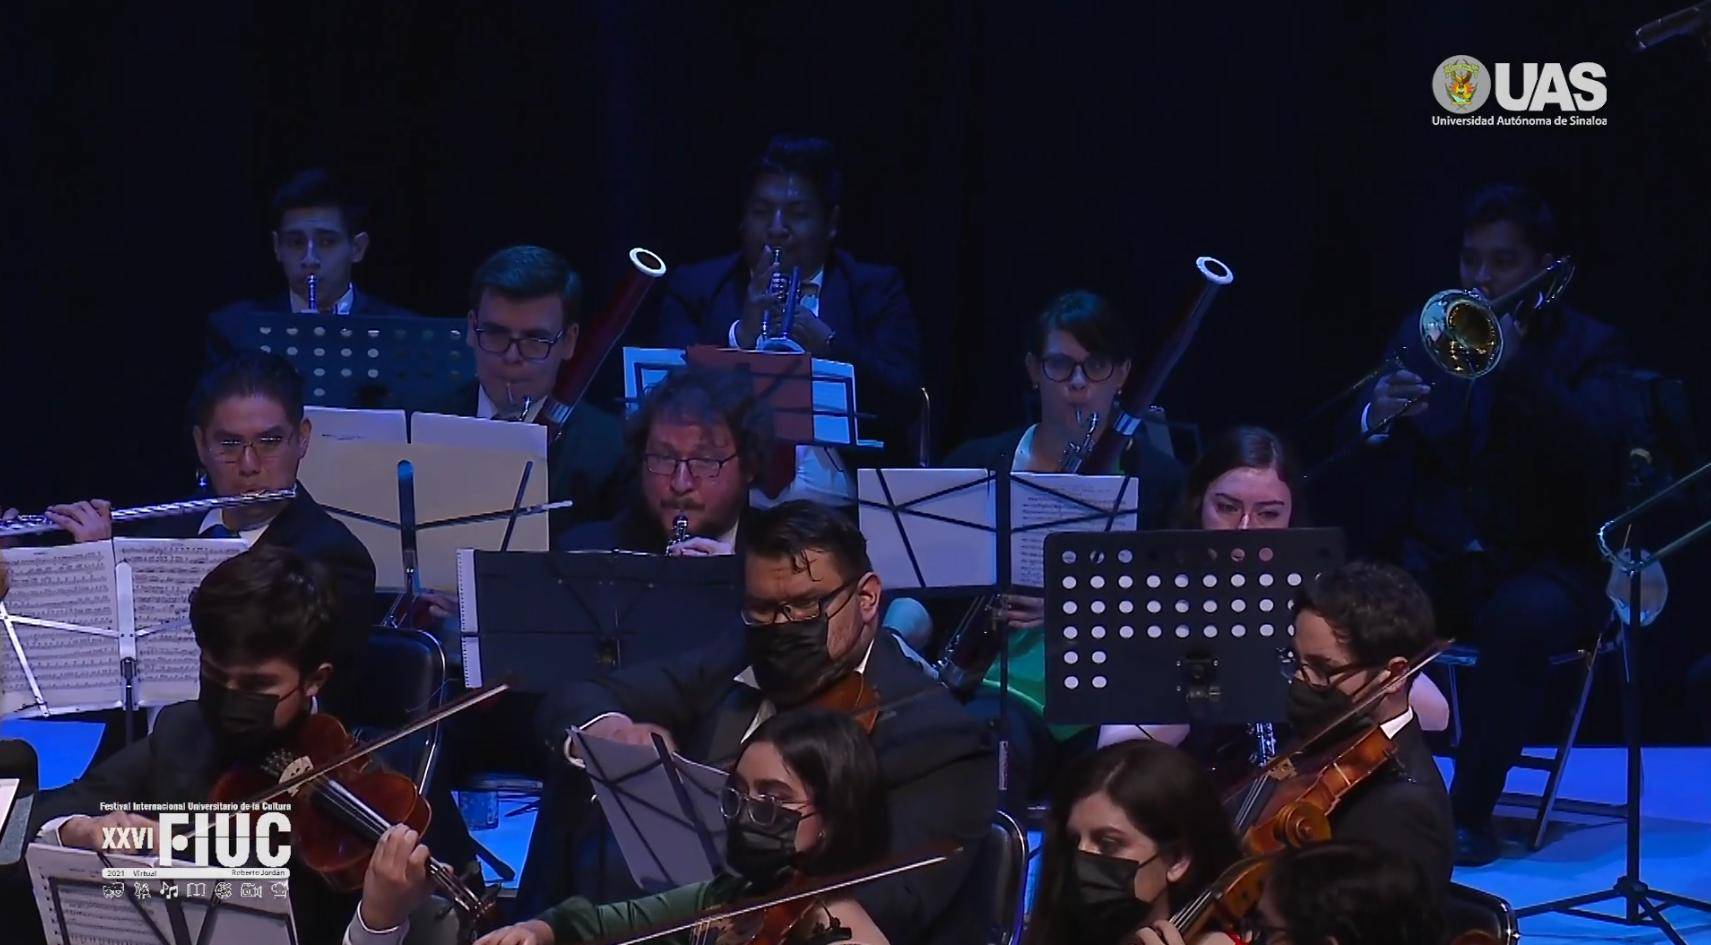 $!Comparte la Sinfonietta Juventus música de Beethoven en los festejos de la UAS